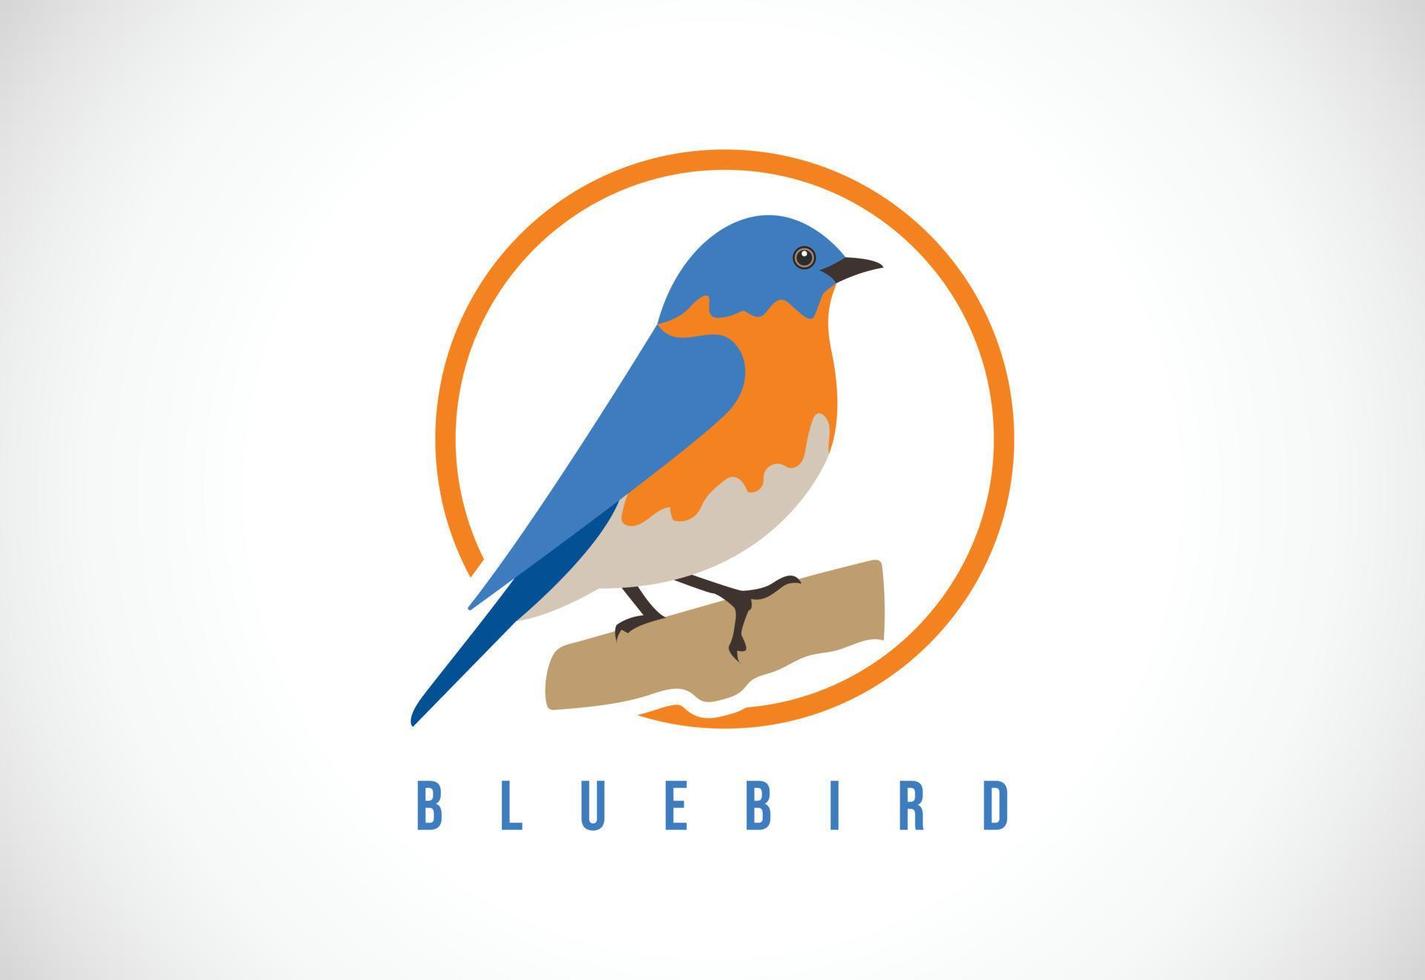 oiseau bleu dans un cercle. modèle de conception de logo bluebird illustration vectorielle vecteur